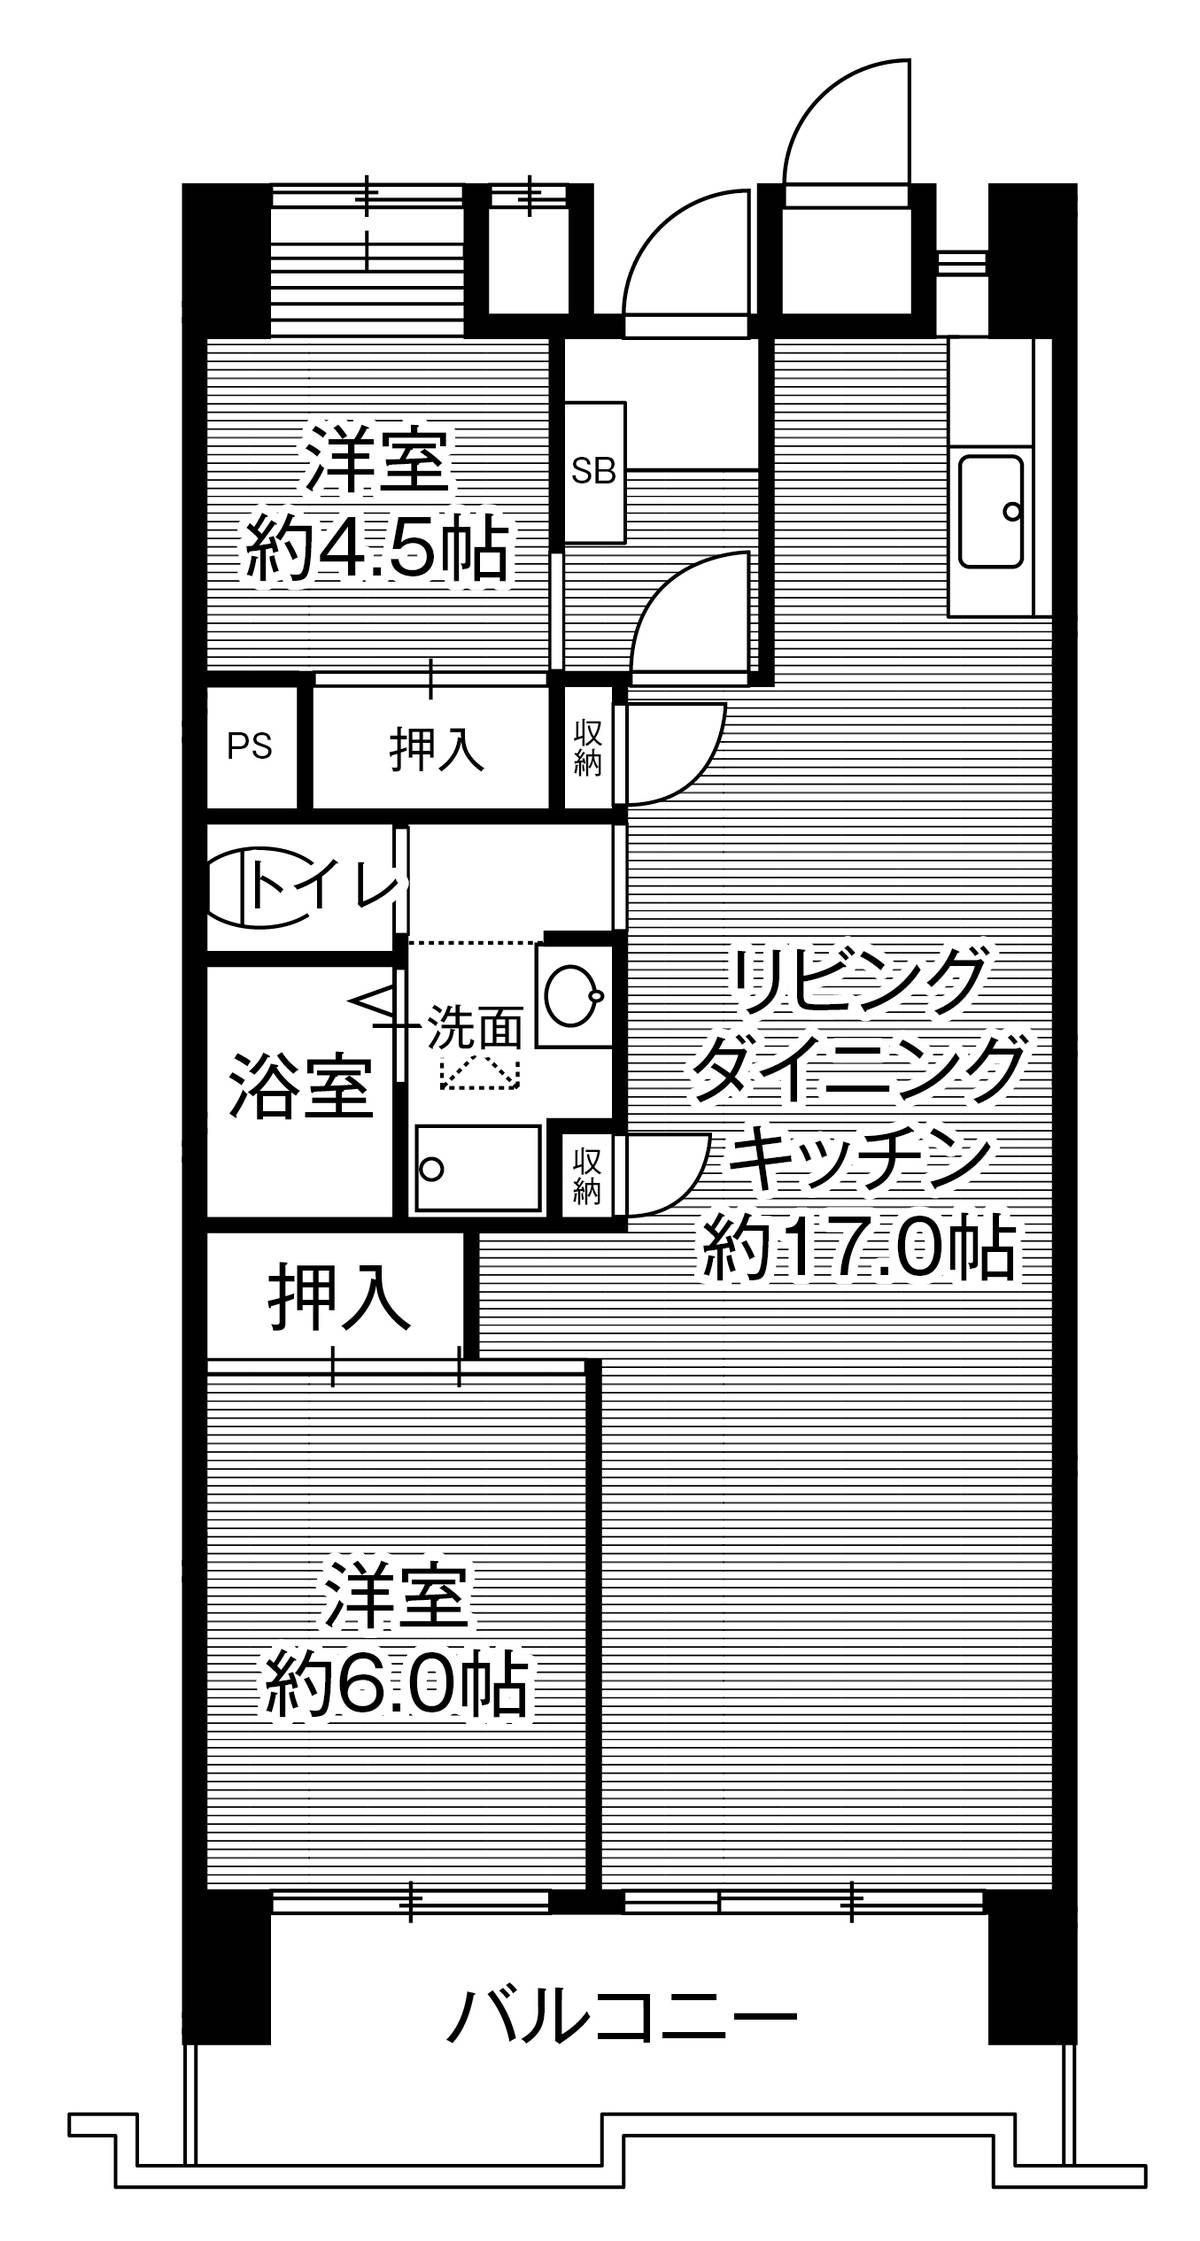 2LDK floorplan of Village House Kounan Tower in Naka-ku